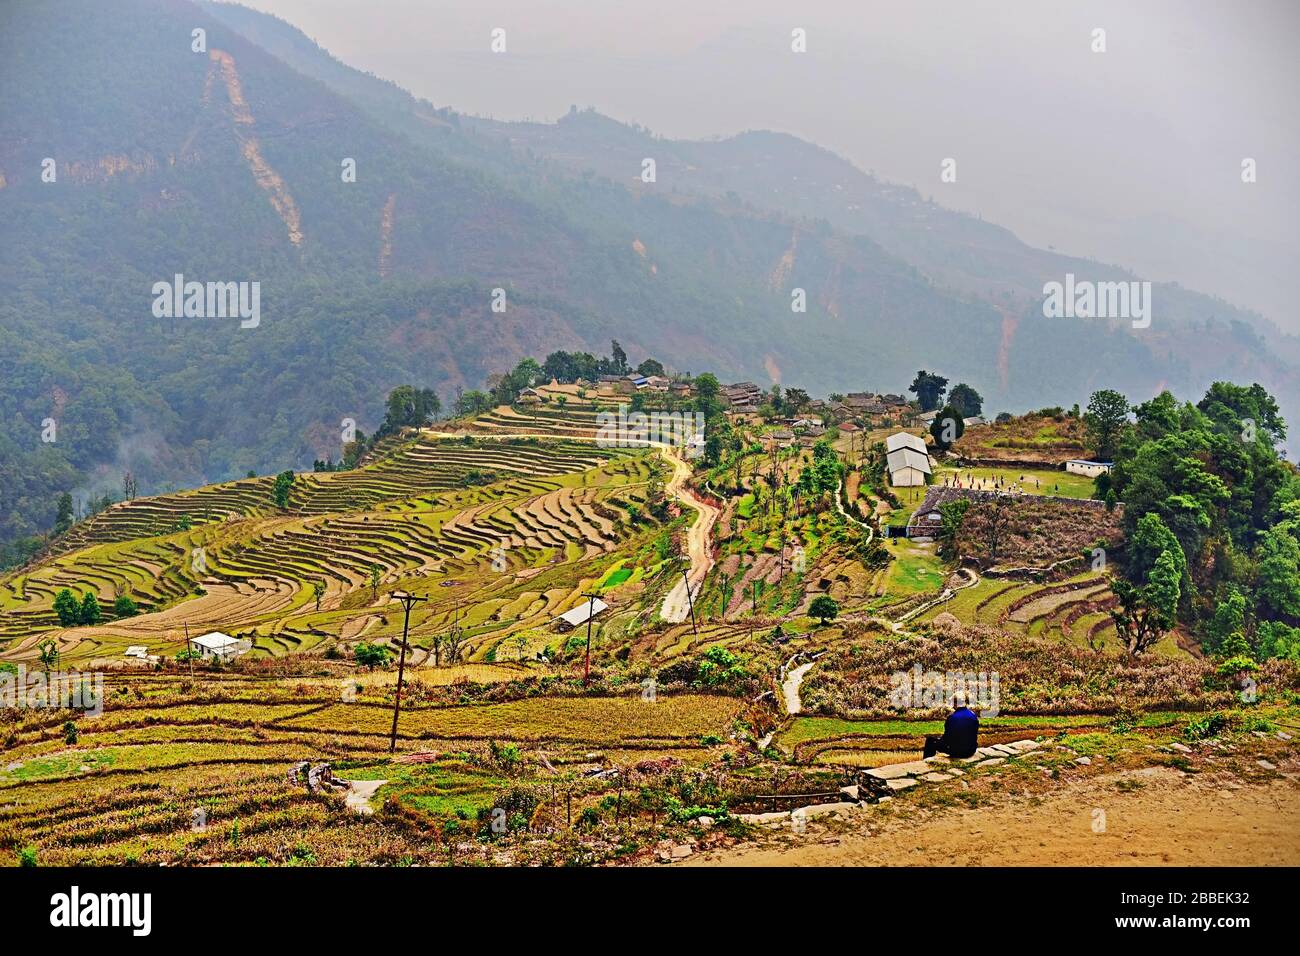 Terrazze di riso con la regione di montagna Panchase sullo sfondo. Foto Stock